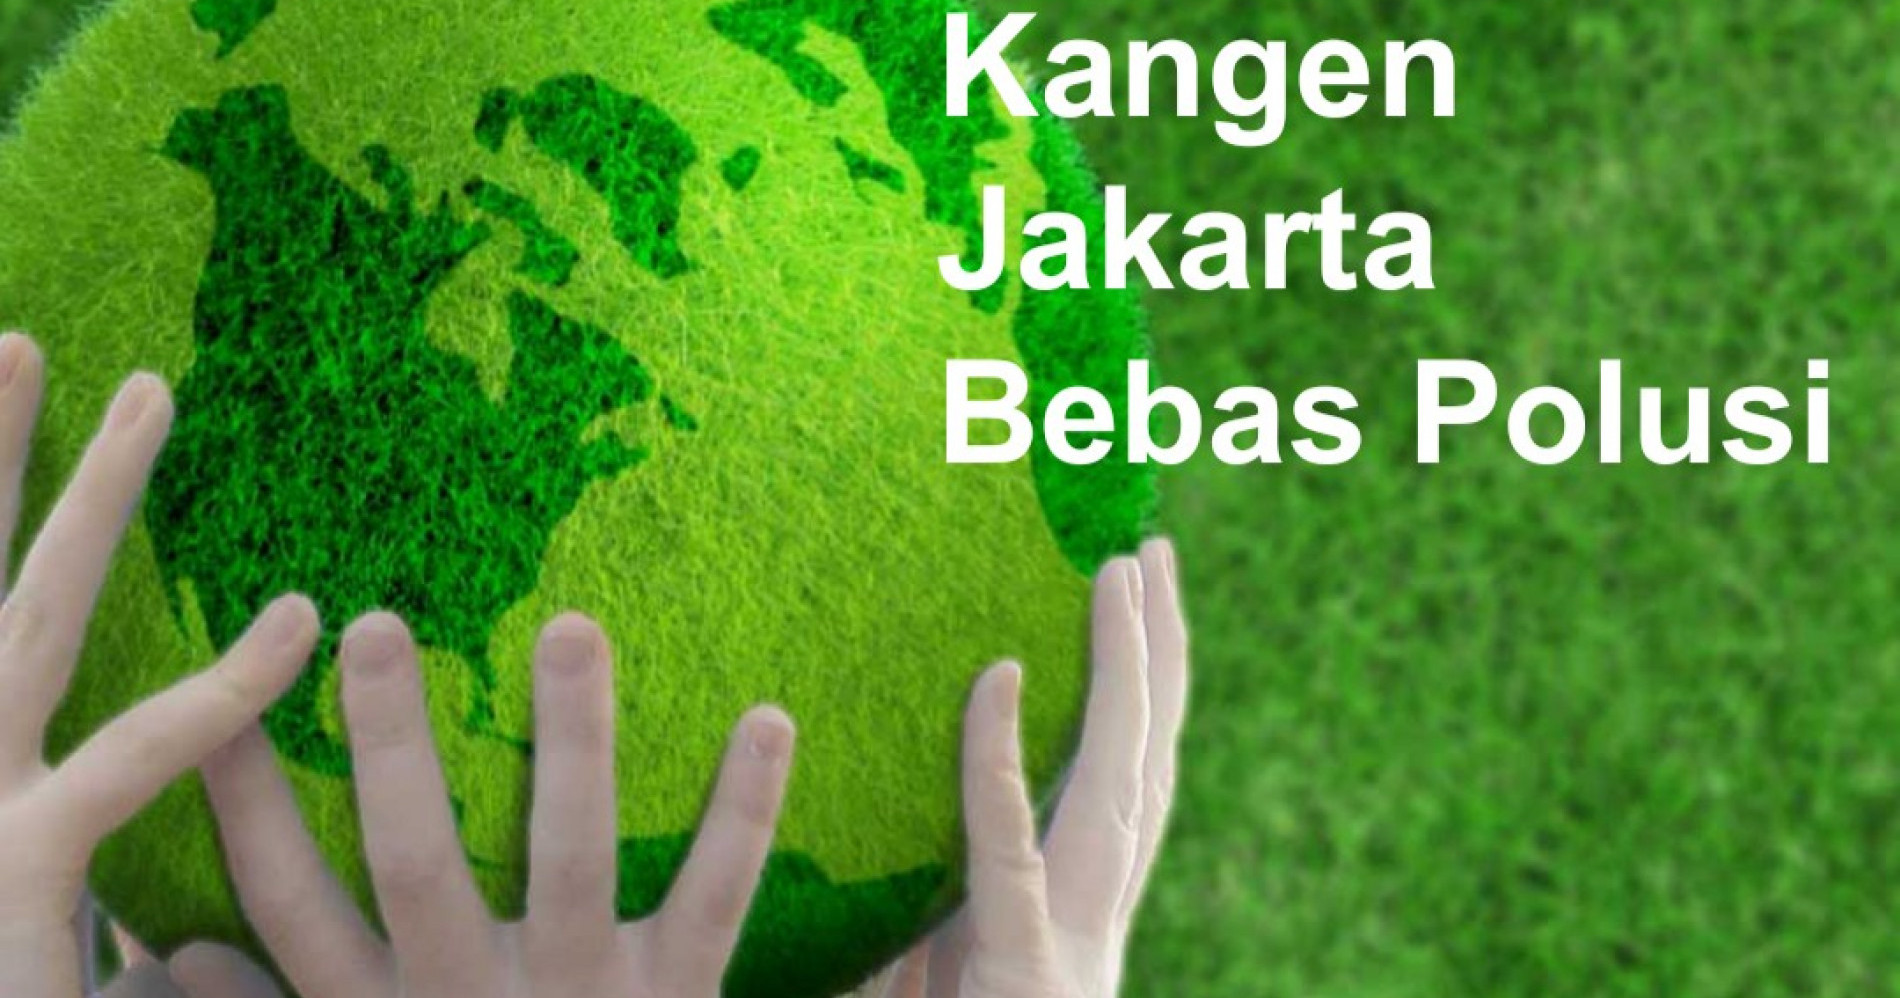 Kangen Jakarta Bebas Polusi